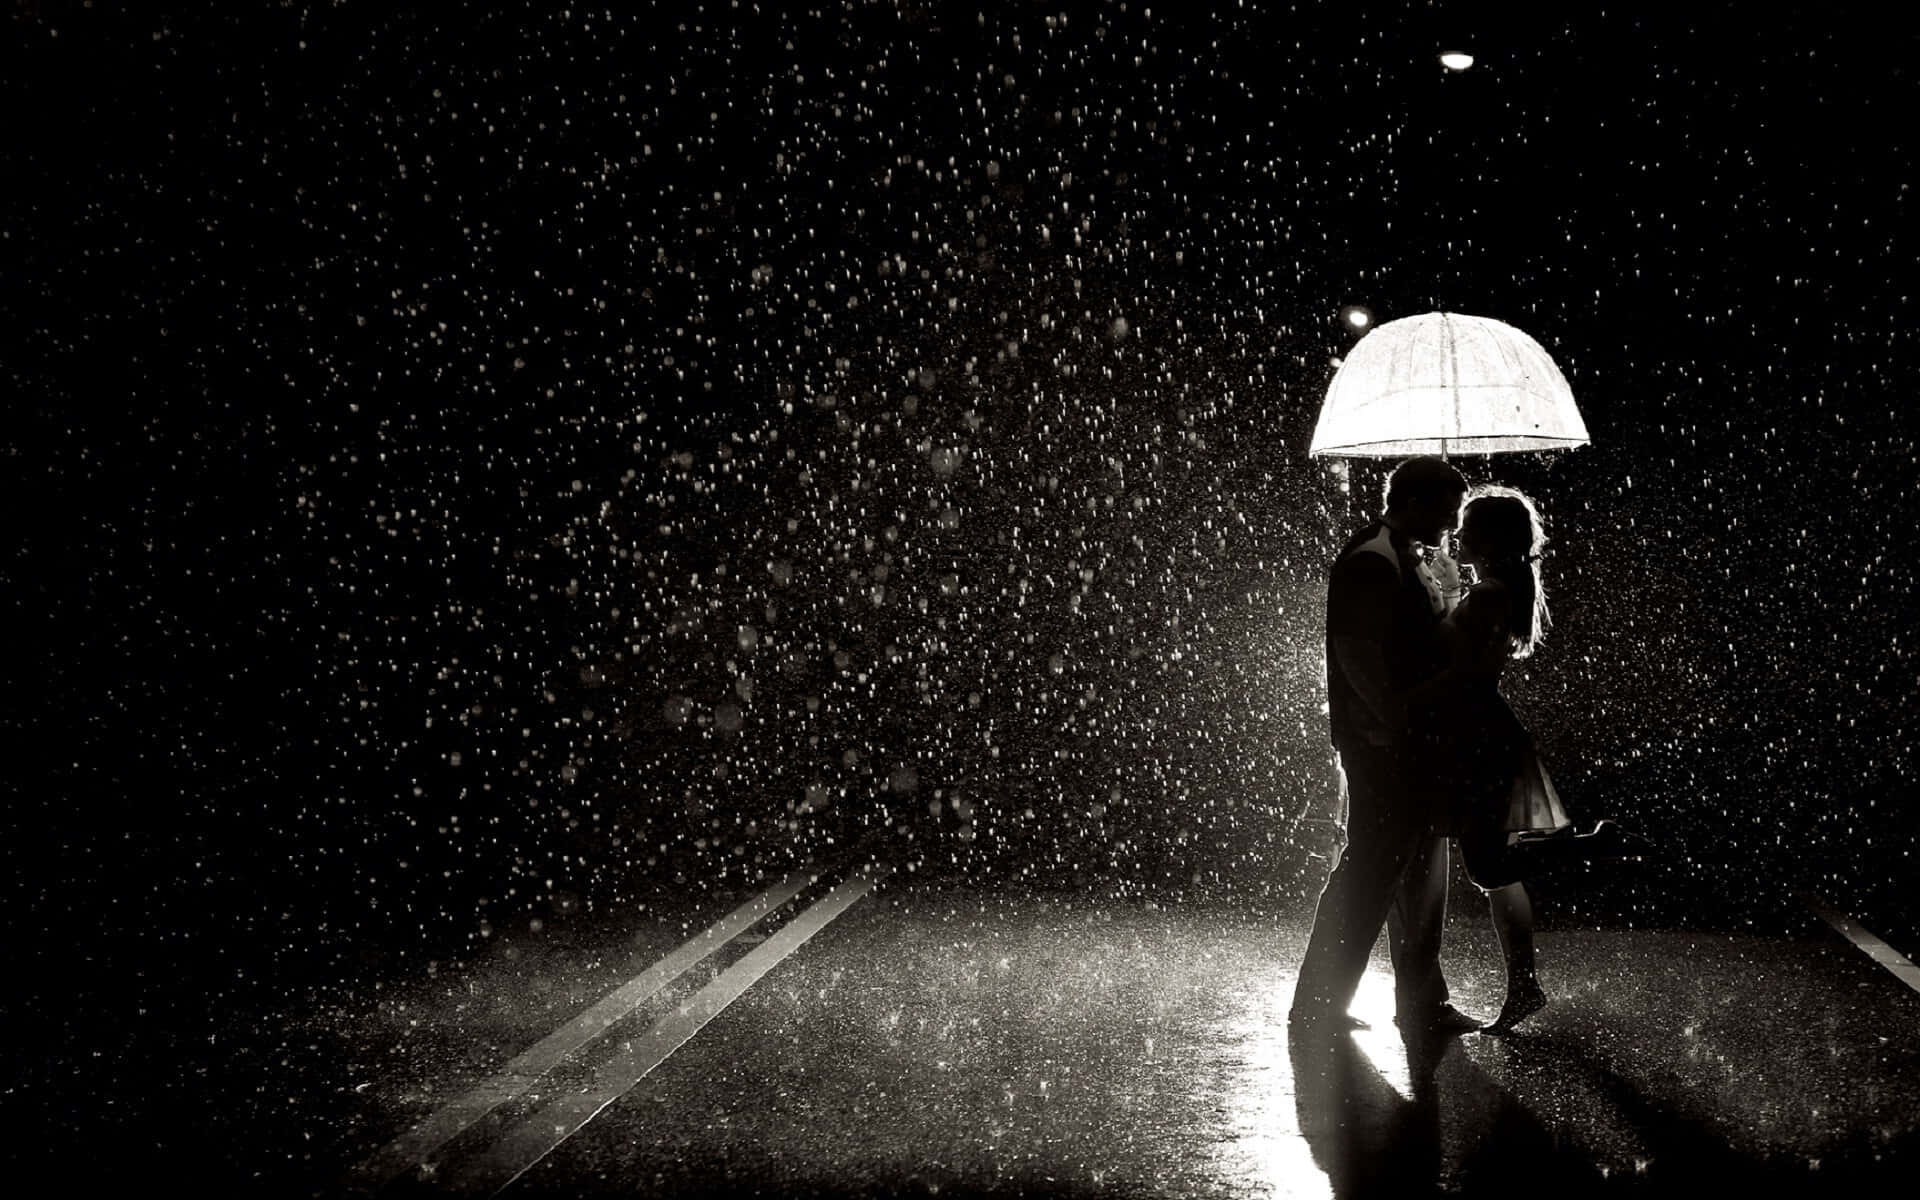 "A romantic walk in the rain"